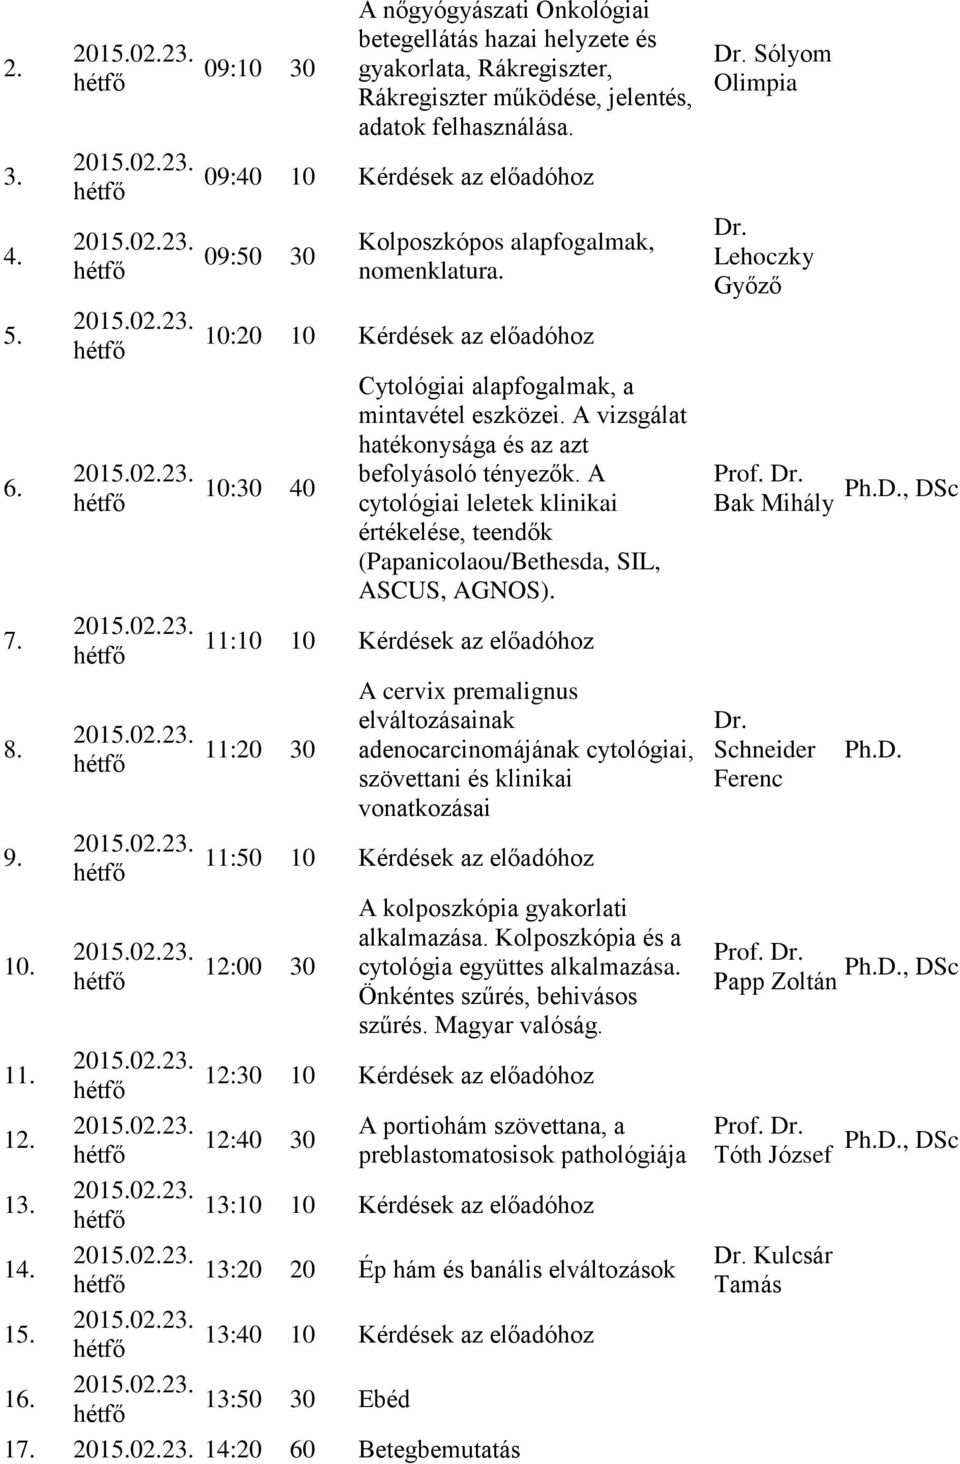 A cytológiai leletek klinikai értékelése, teendők (Papanicolaou/Bethesda, SIL, ASCUS, AGNOS).